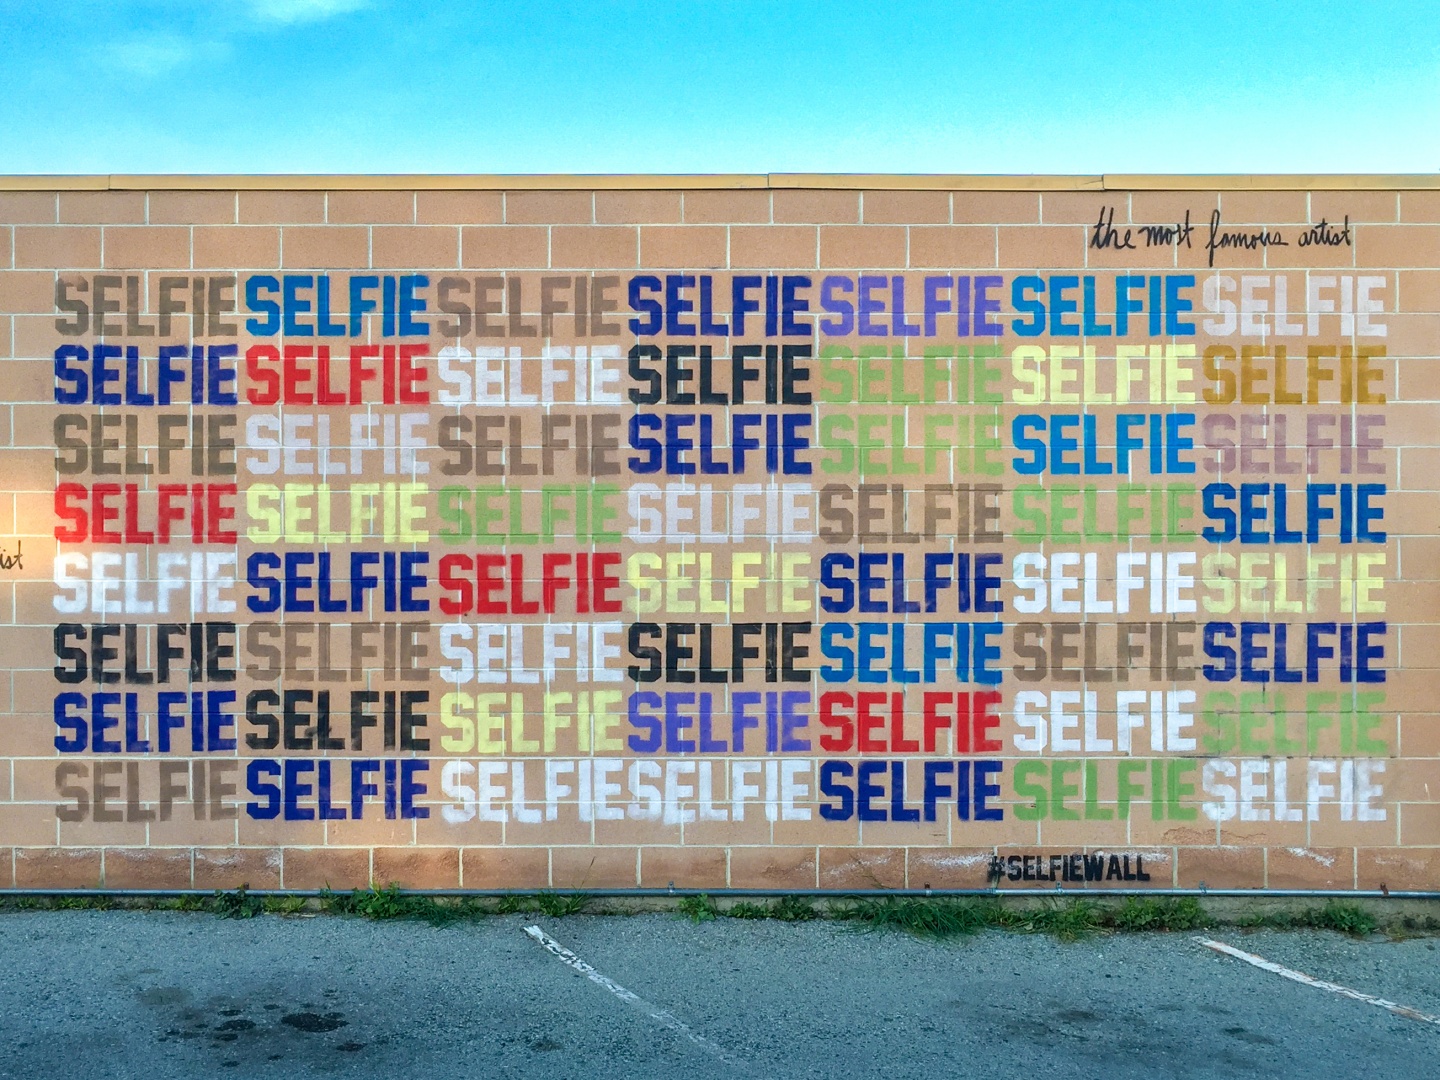 Selfie Wall